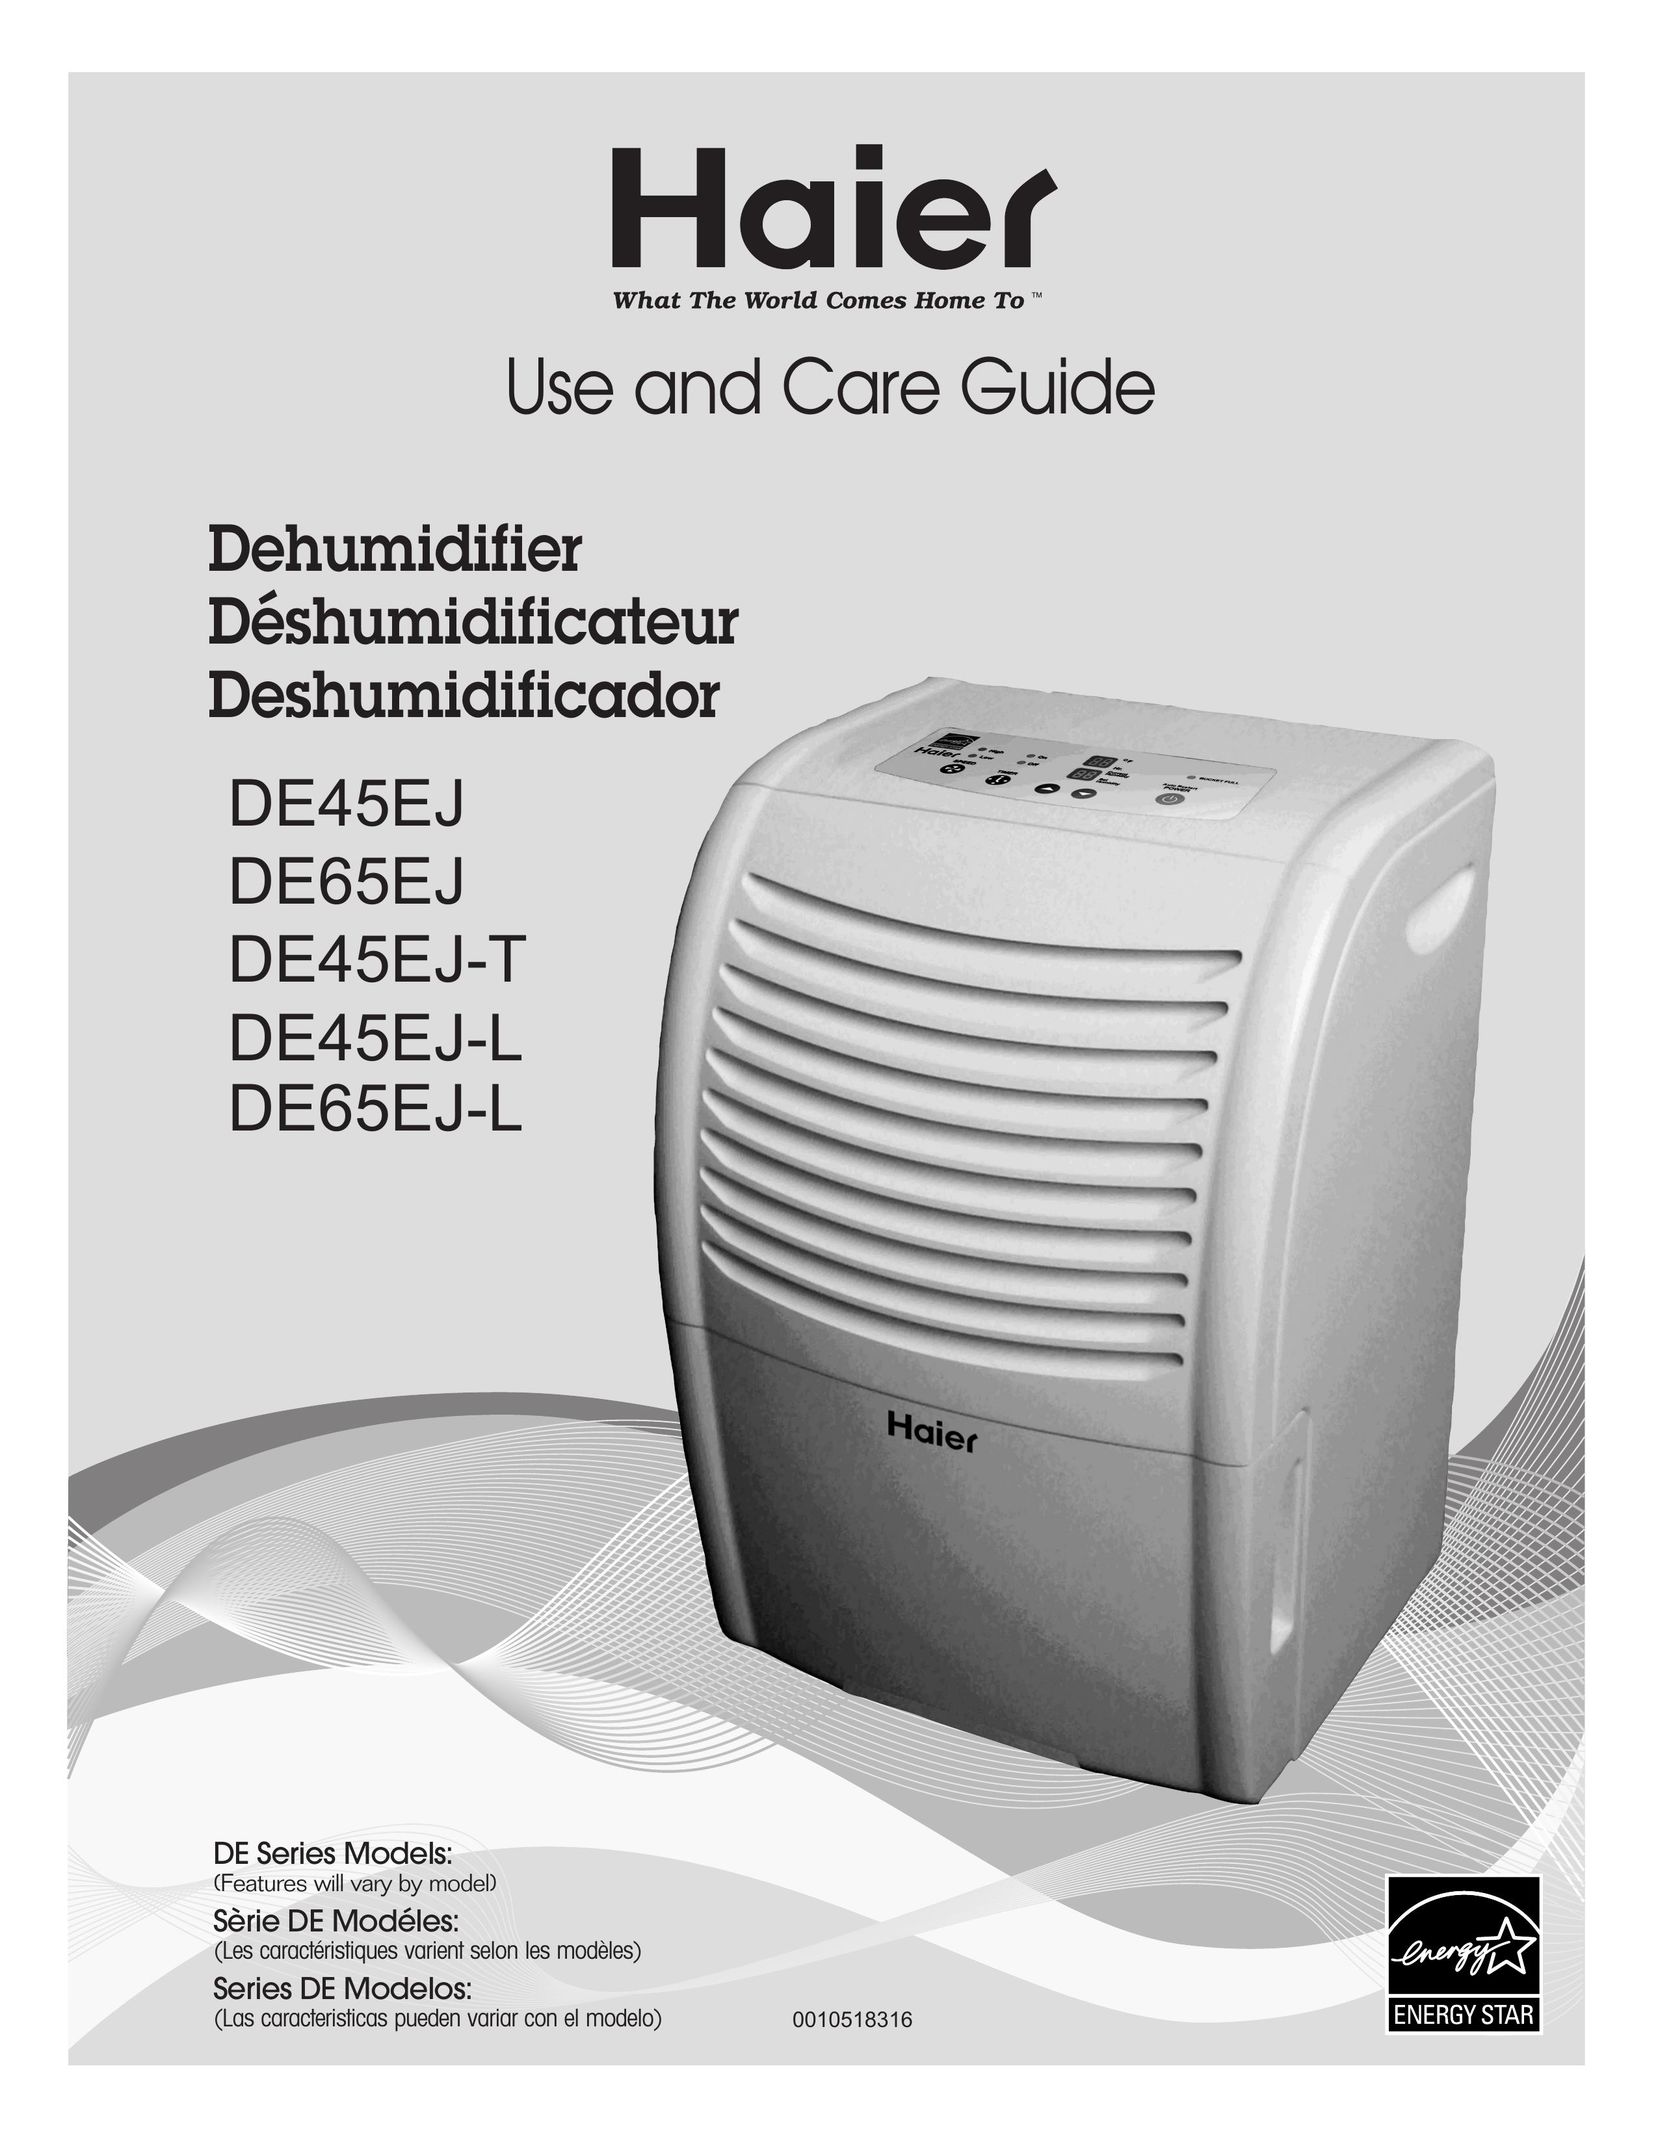 Haier DE45EJ Dehumidifier User Manual